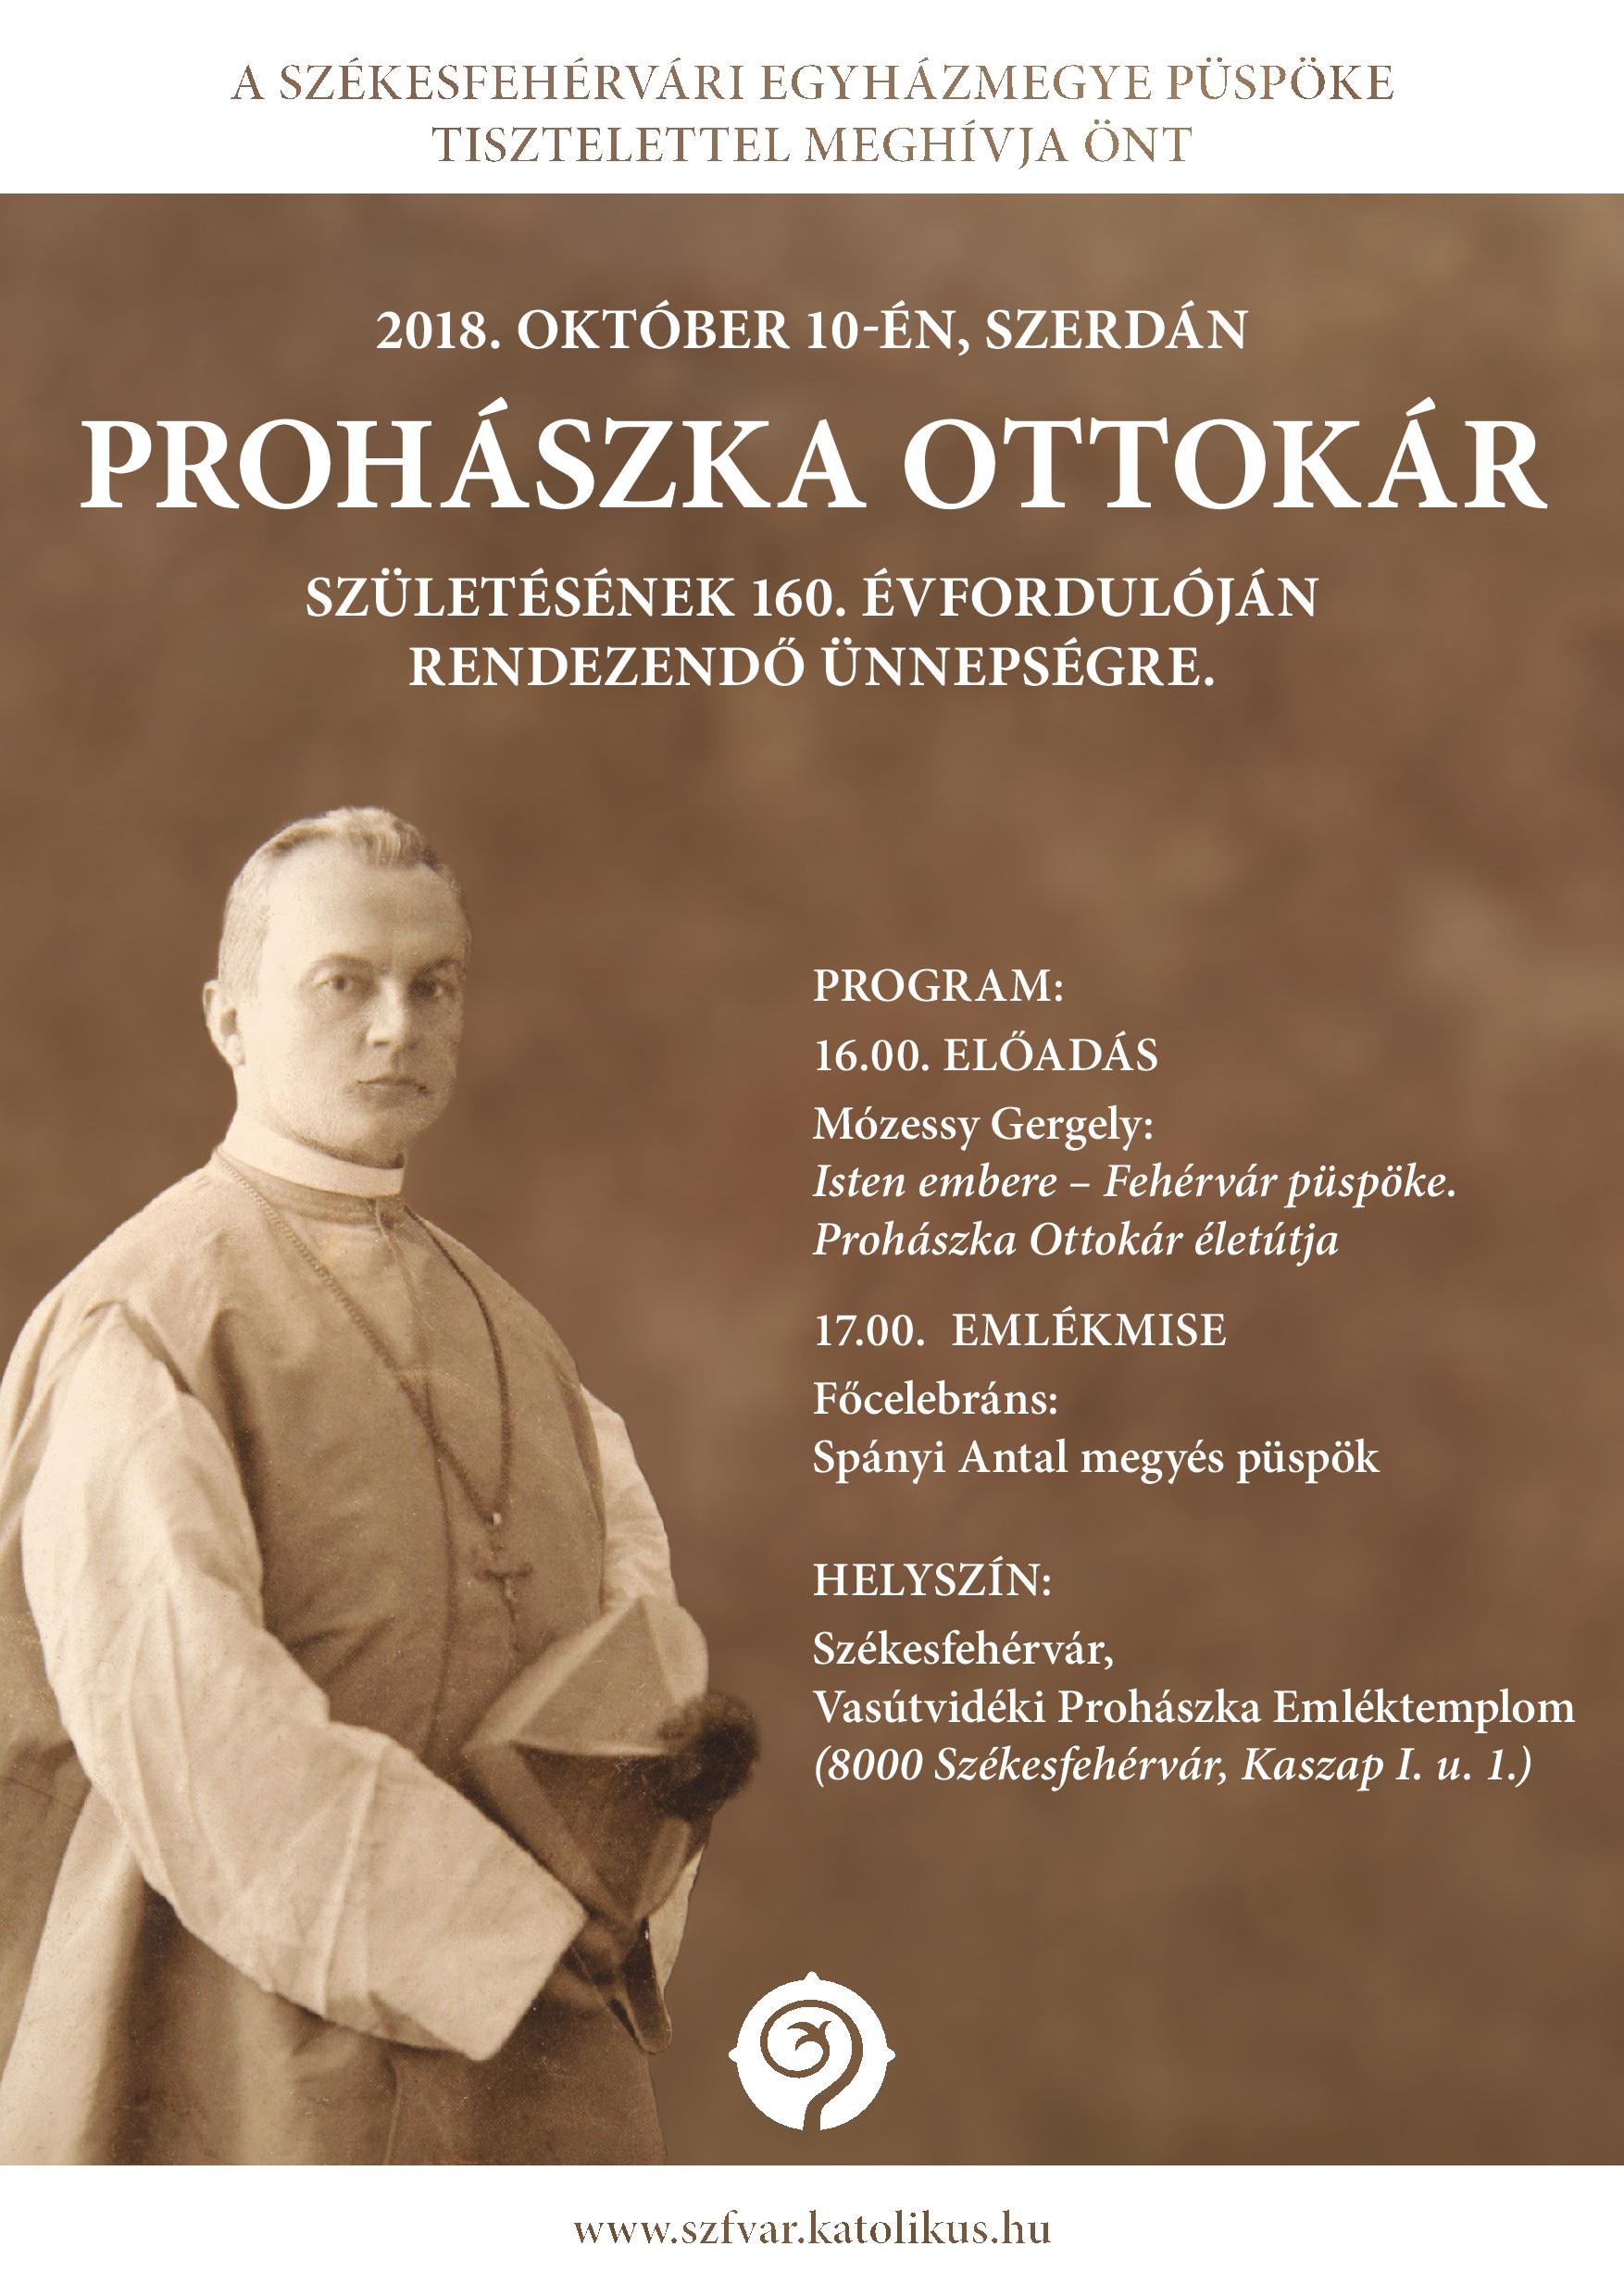 A 160 éve született Prohászka Ottokár püspökre emlékeznek szerdán